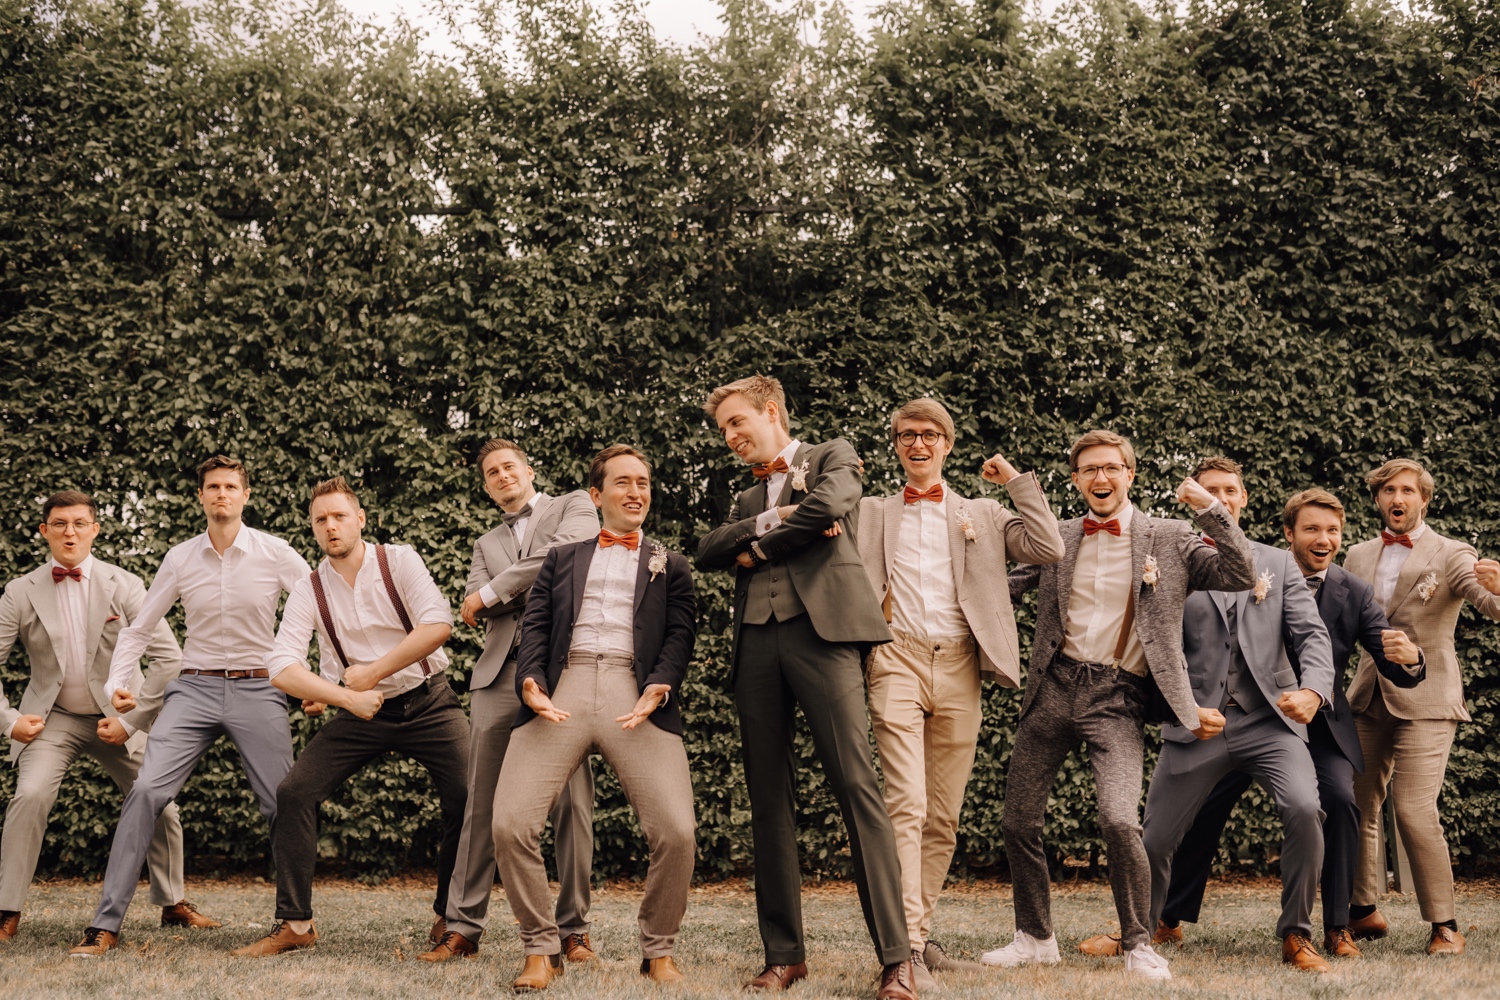 Huwelijksfotograaf Limburg - bruidsjonkers poseren stoer voor de foto